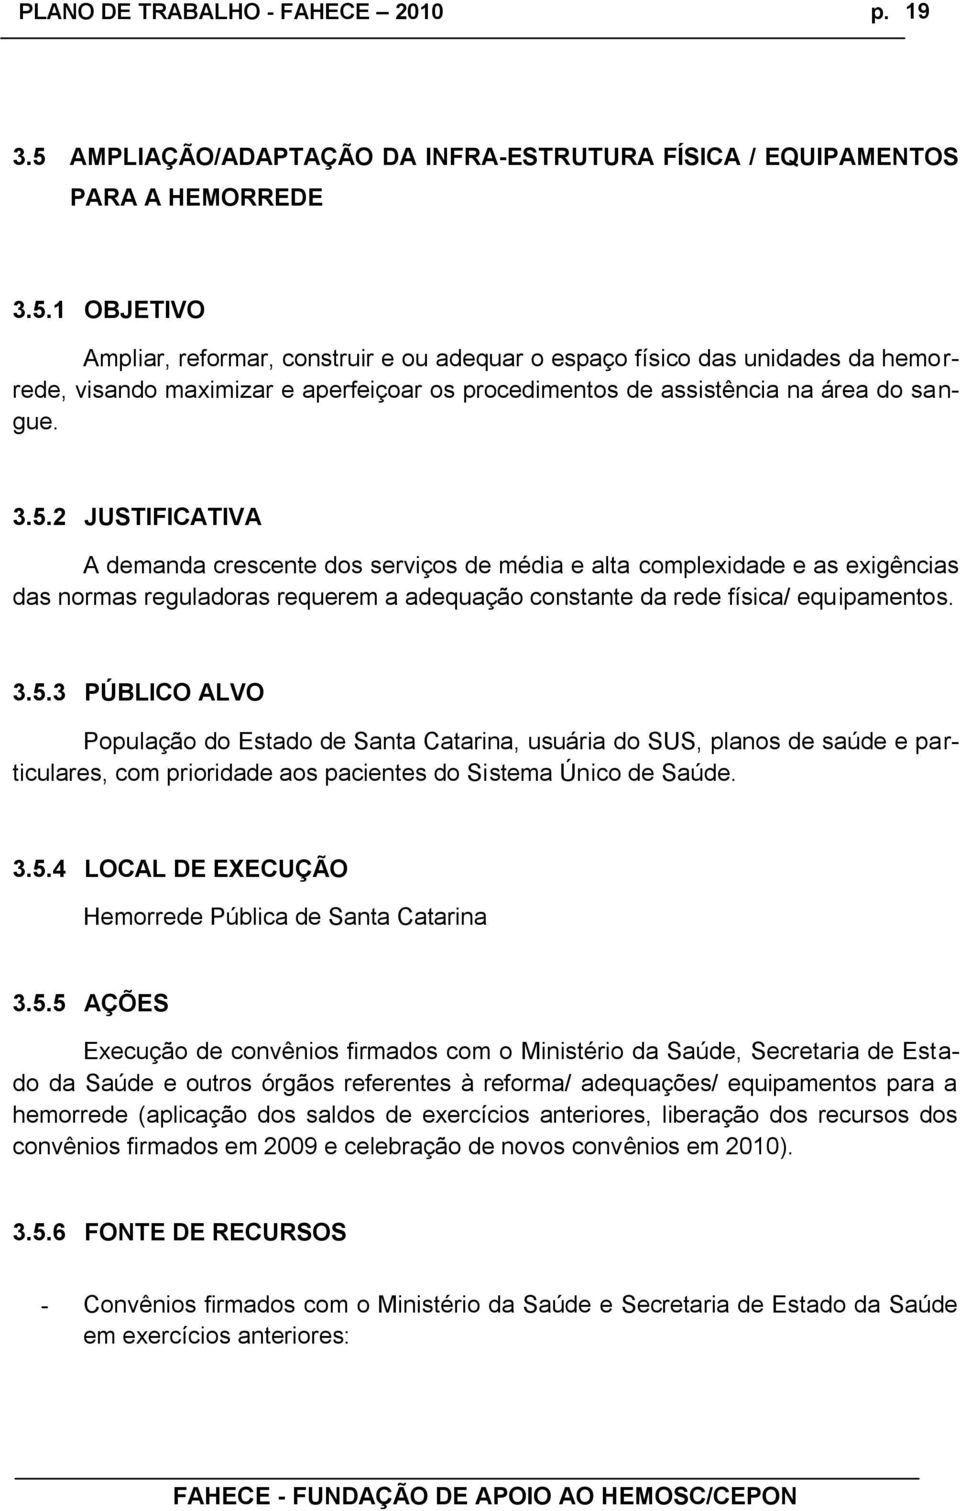 3.5.4 LOCAL DE EXECUÇÃO Hemorrede Pública de Santa Catarina 3.5.5 AÇÕES Execução de convênios firmados com o Ministério da Saúde, Secretaria de Estado da Saúde e outros órgãos referentes à reforma/